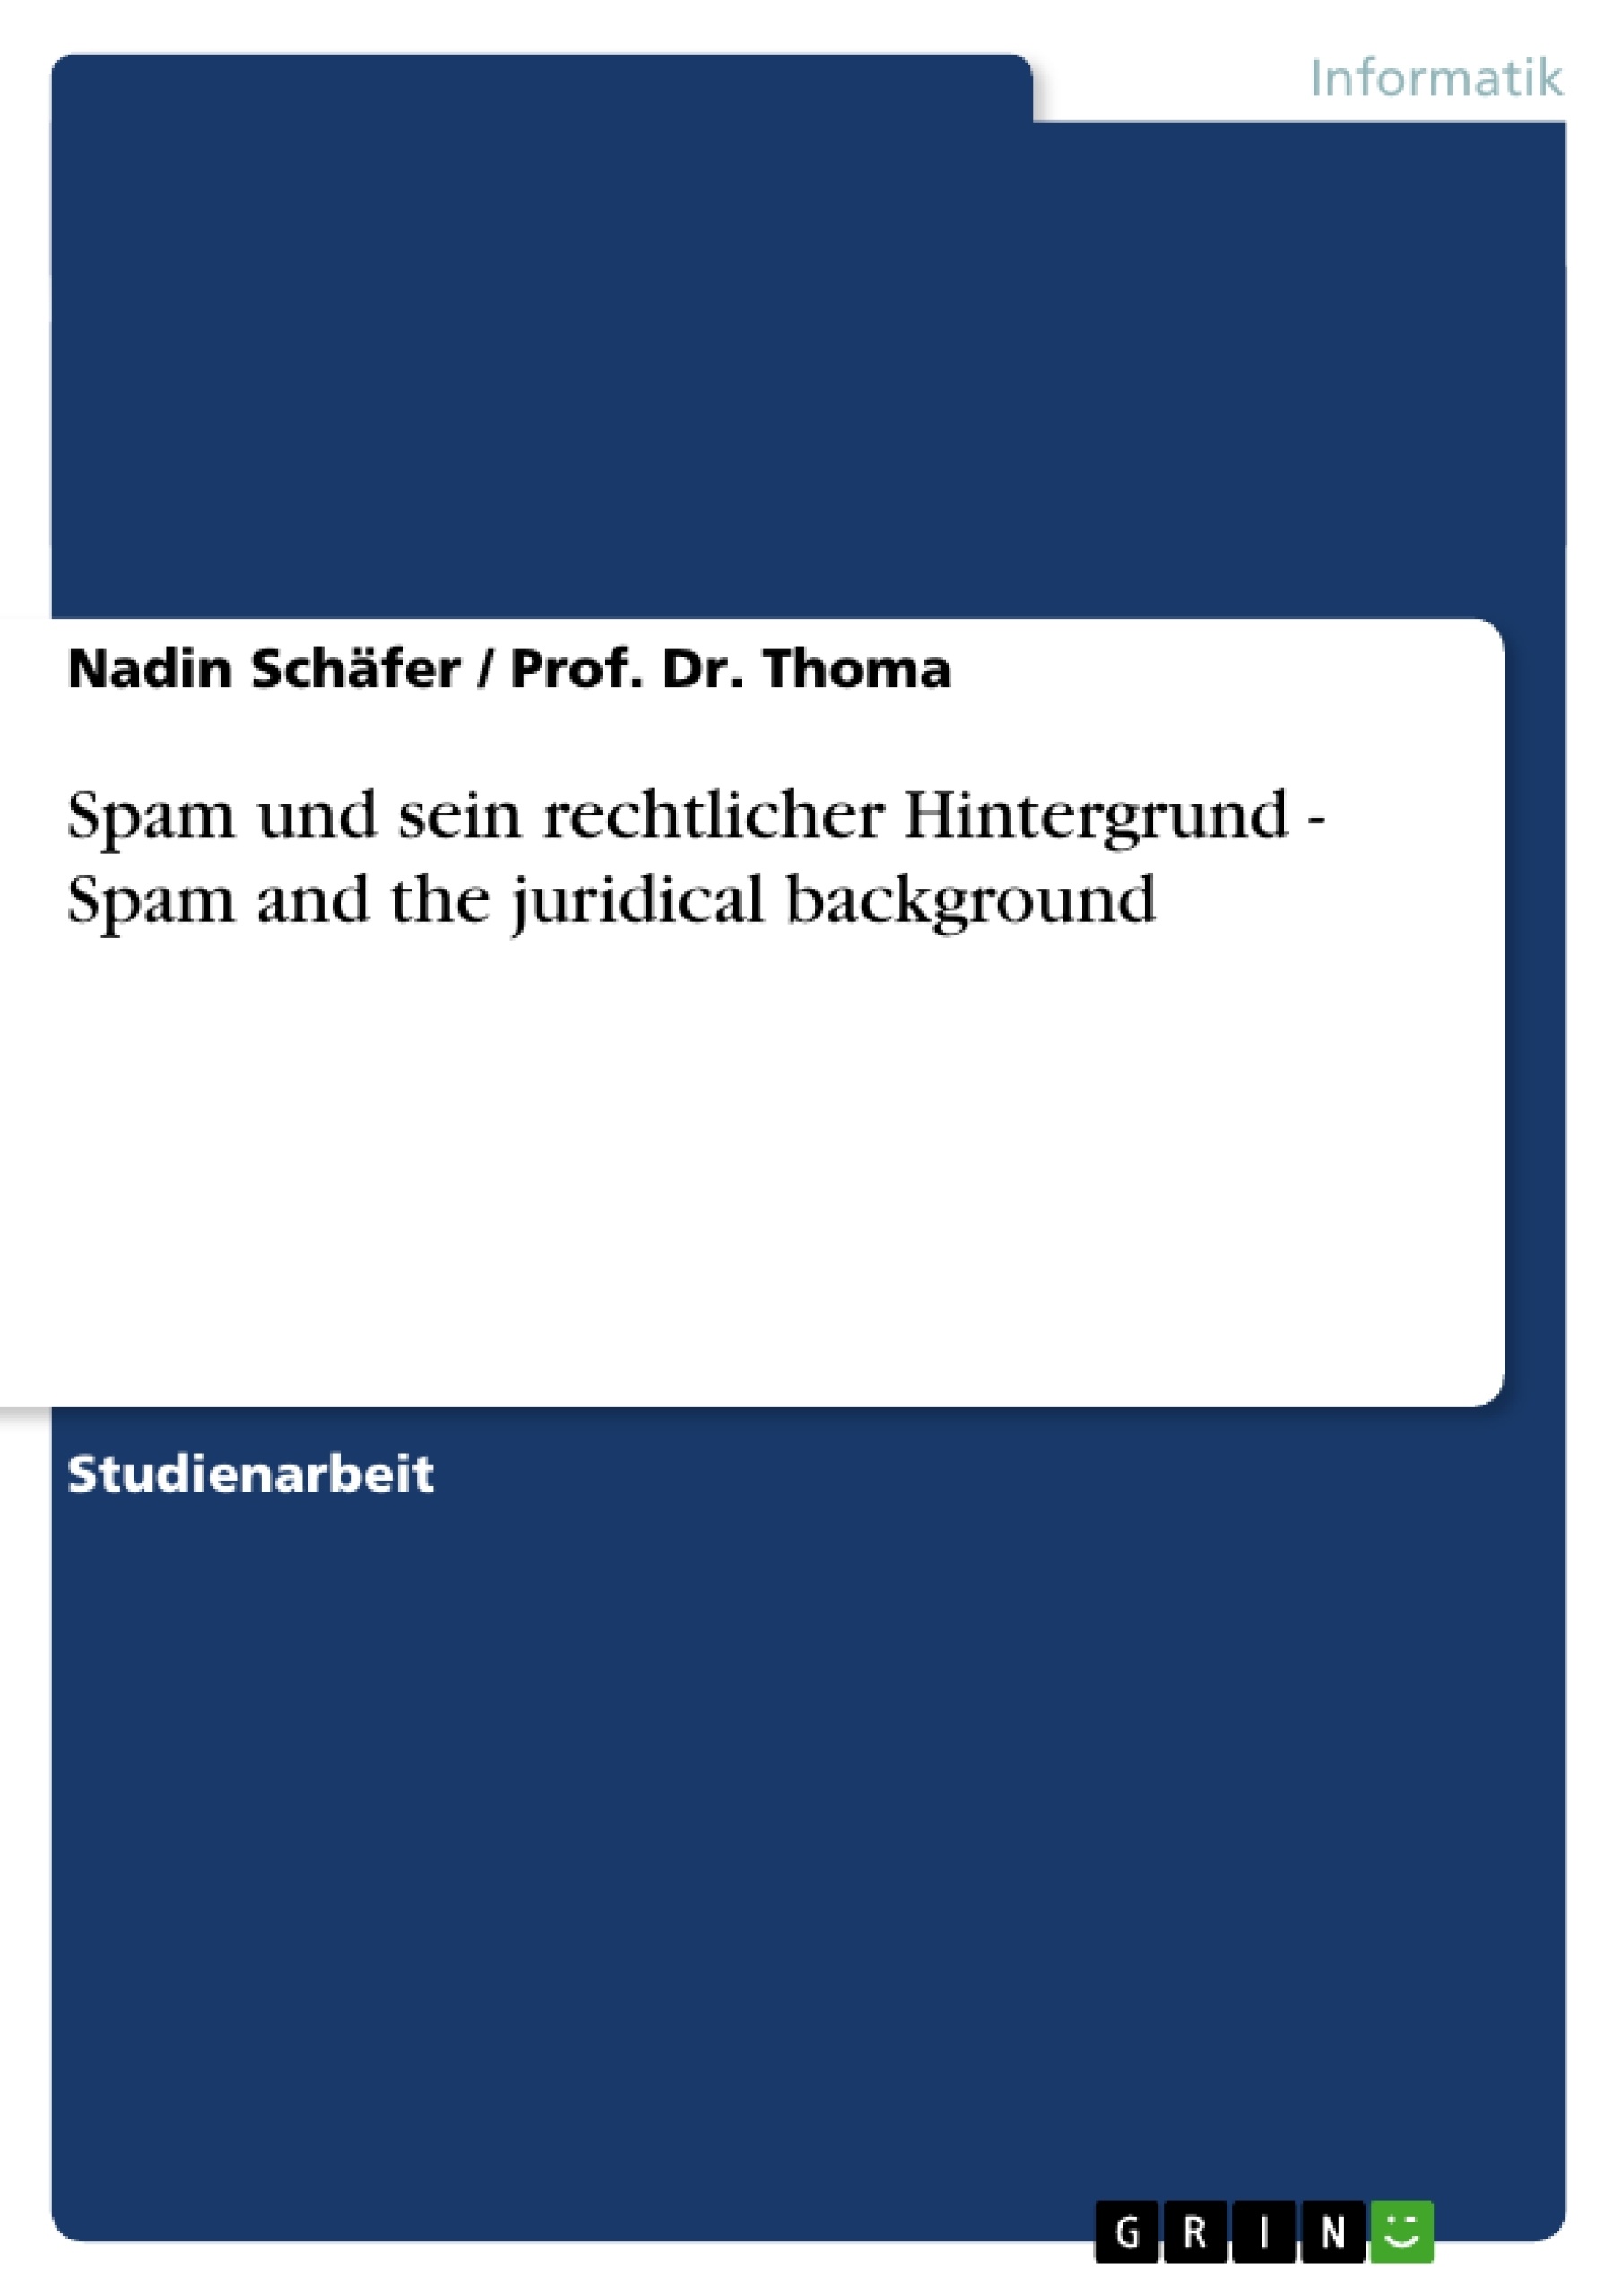 Title: Spam und sein rechtlicher Hintergrund - Spam and the juridical background